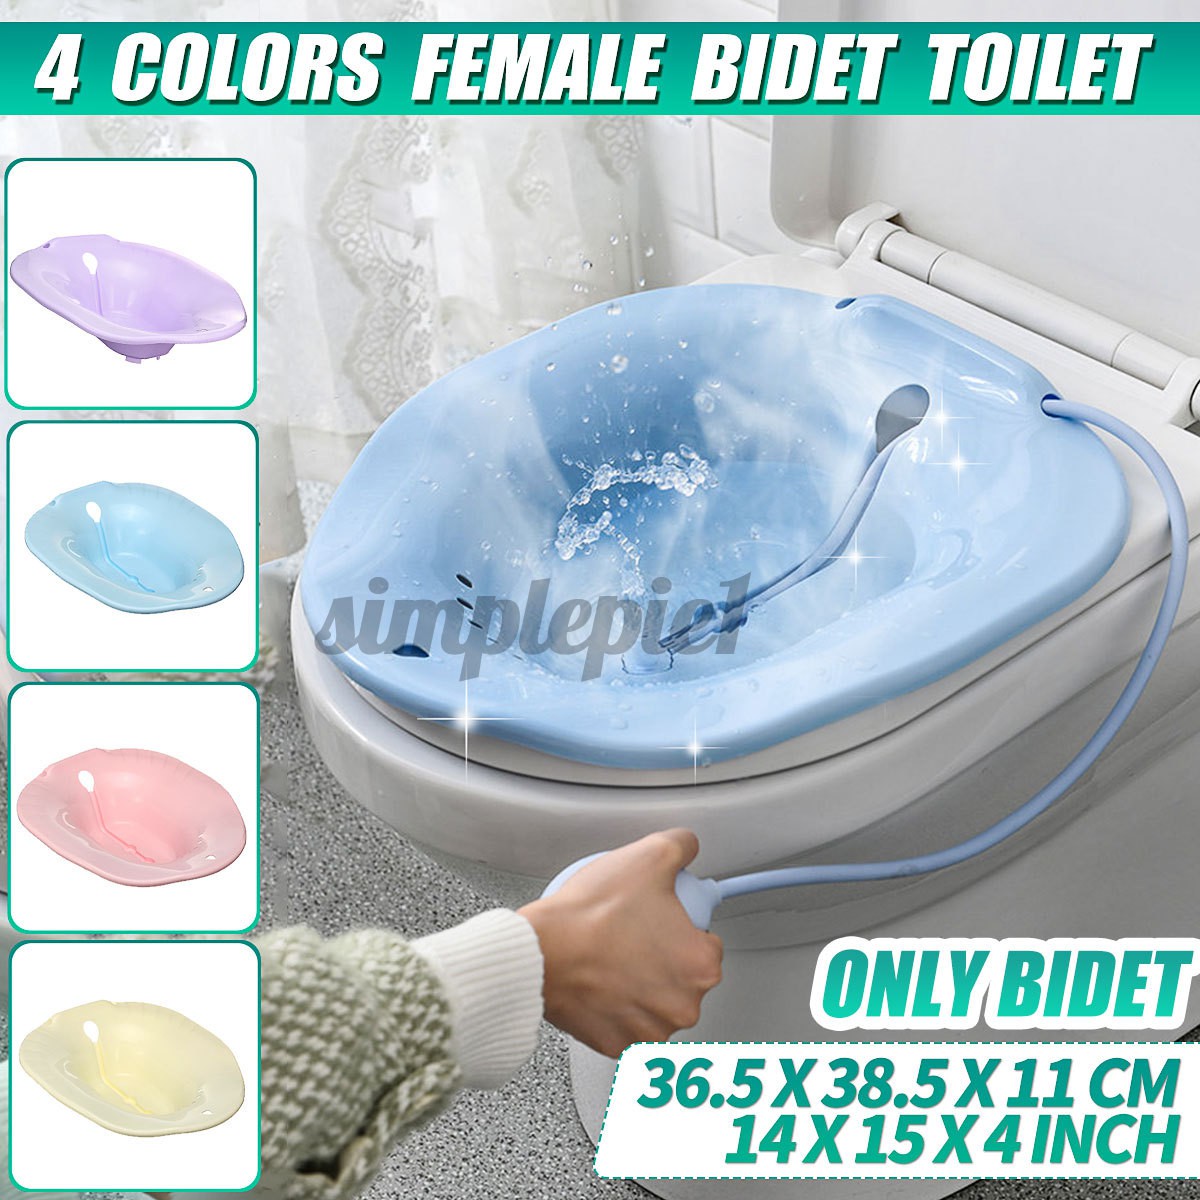 Bệ xông hơi vùng kín gắn toilet 4 màu sáng tạo tiện lợi